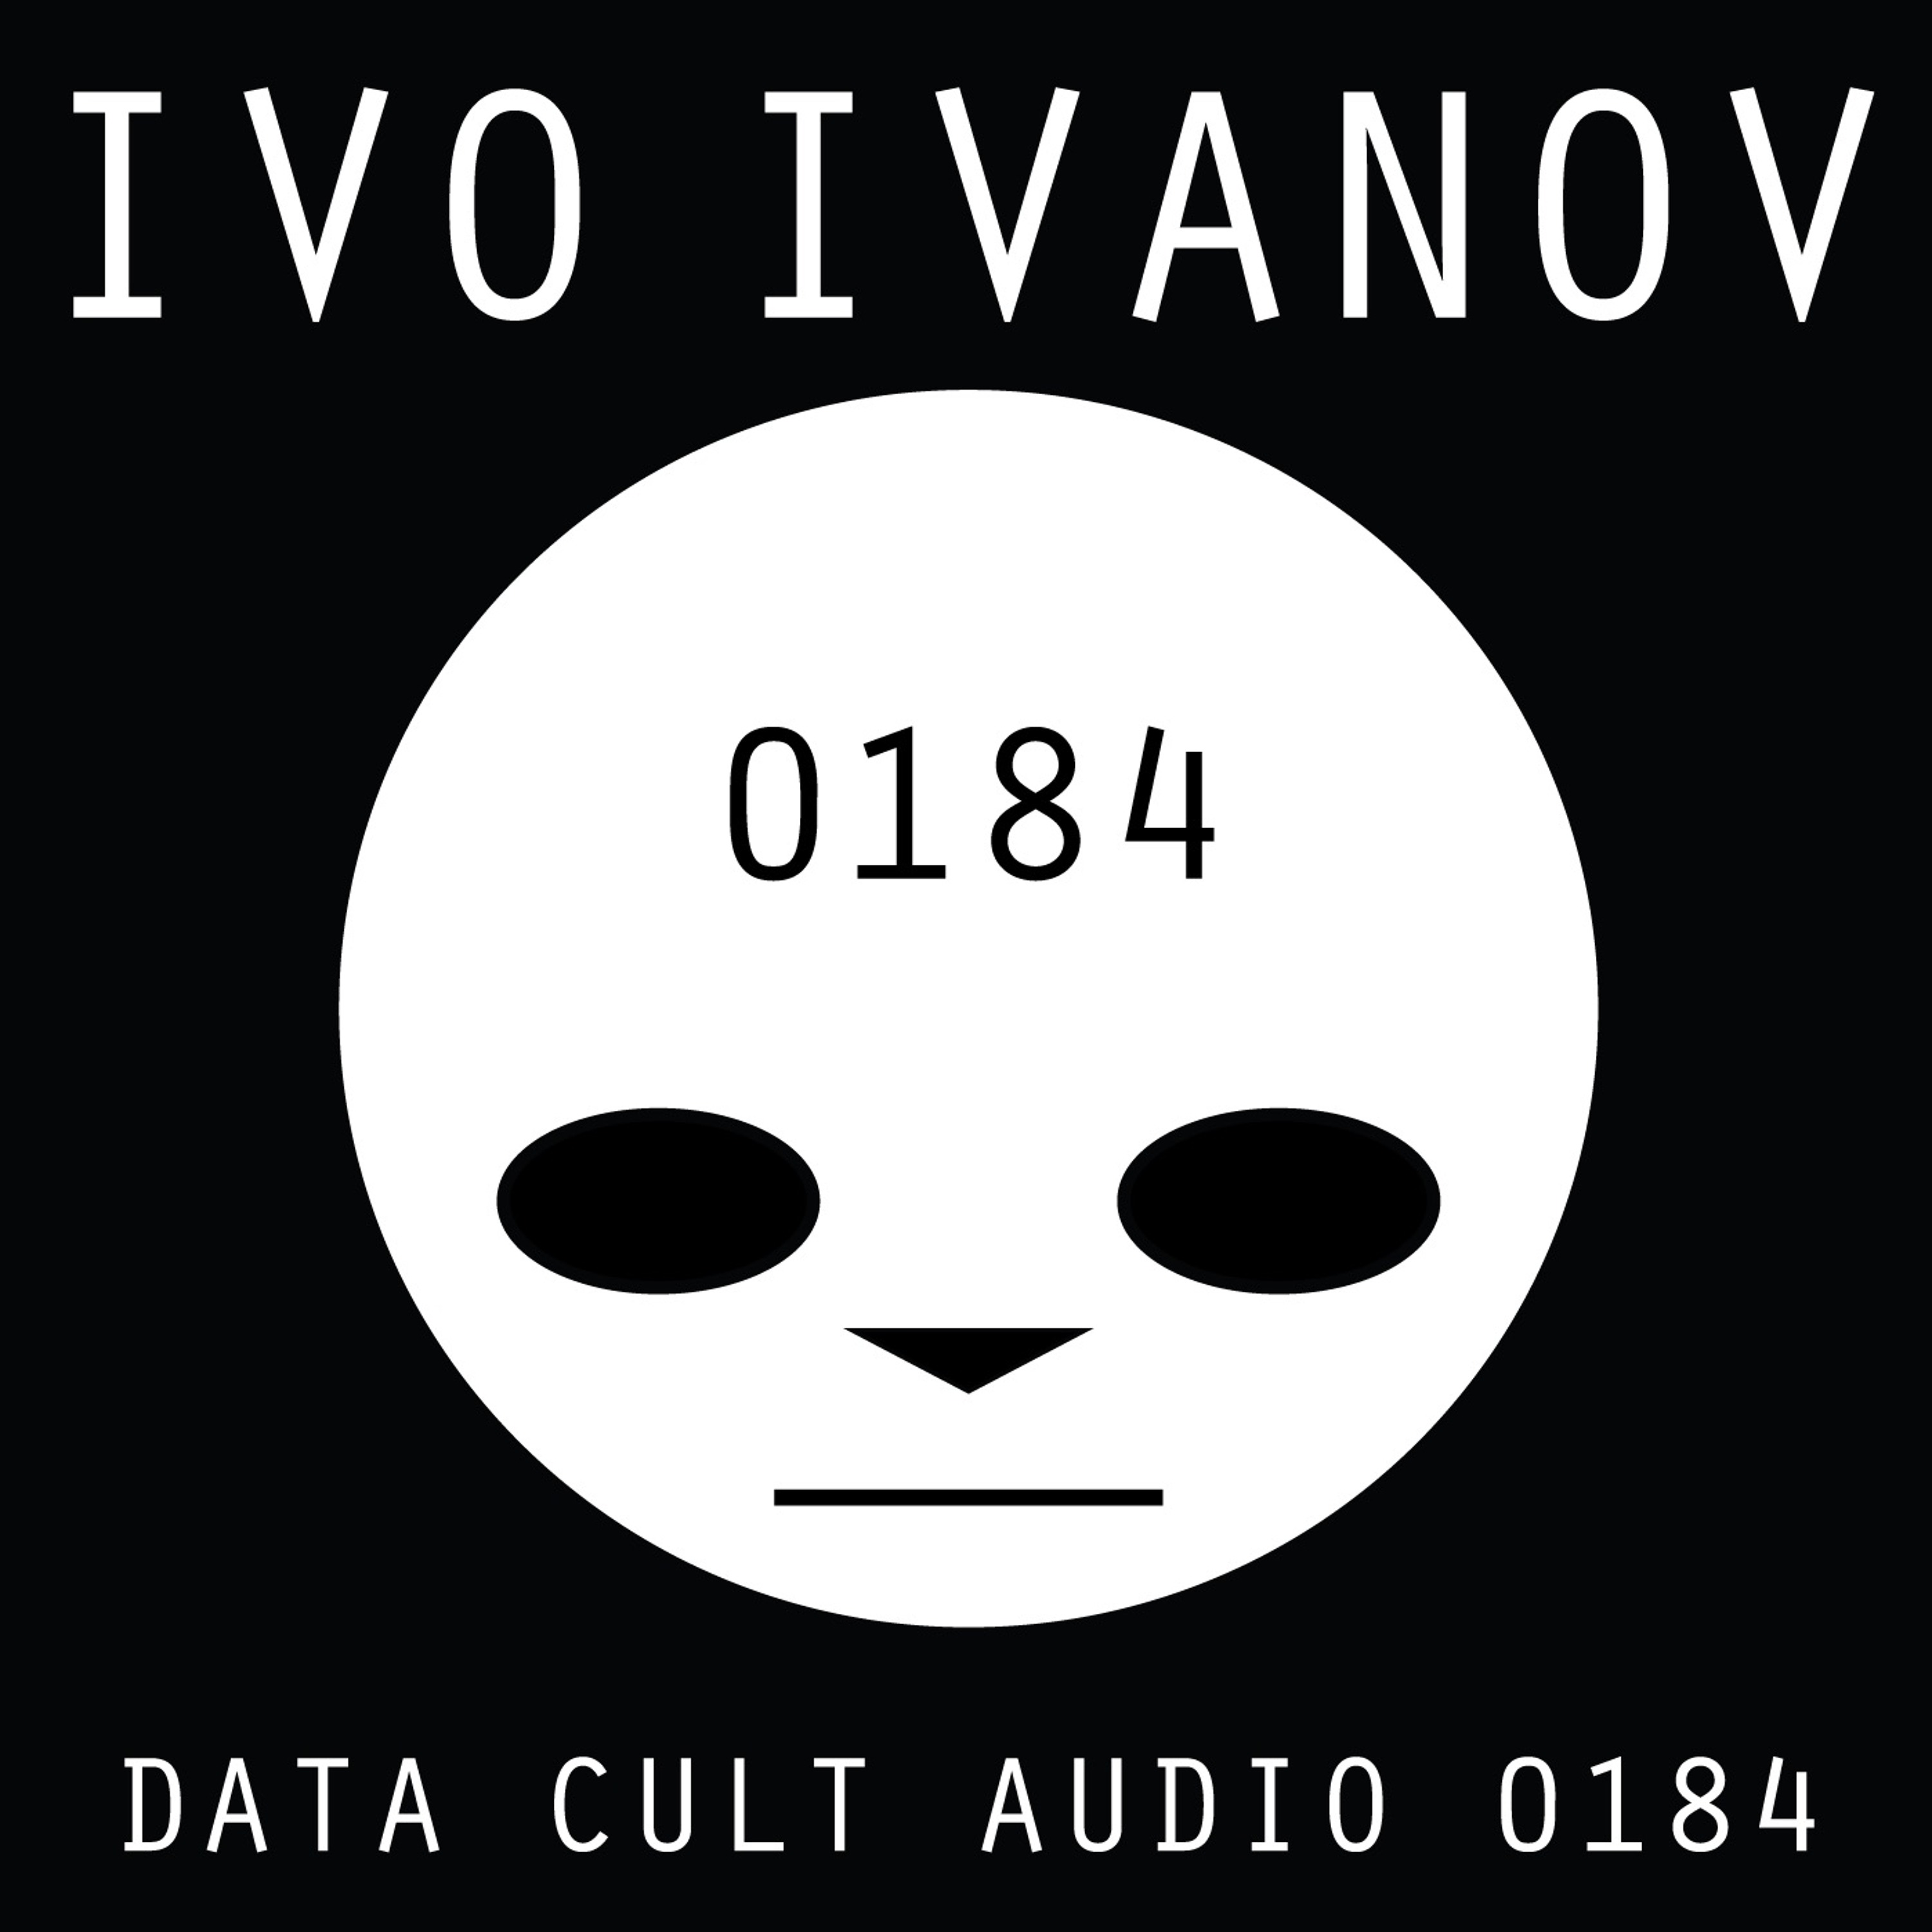 Data Cult Audio 0184 - Ivo Ivanov